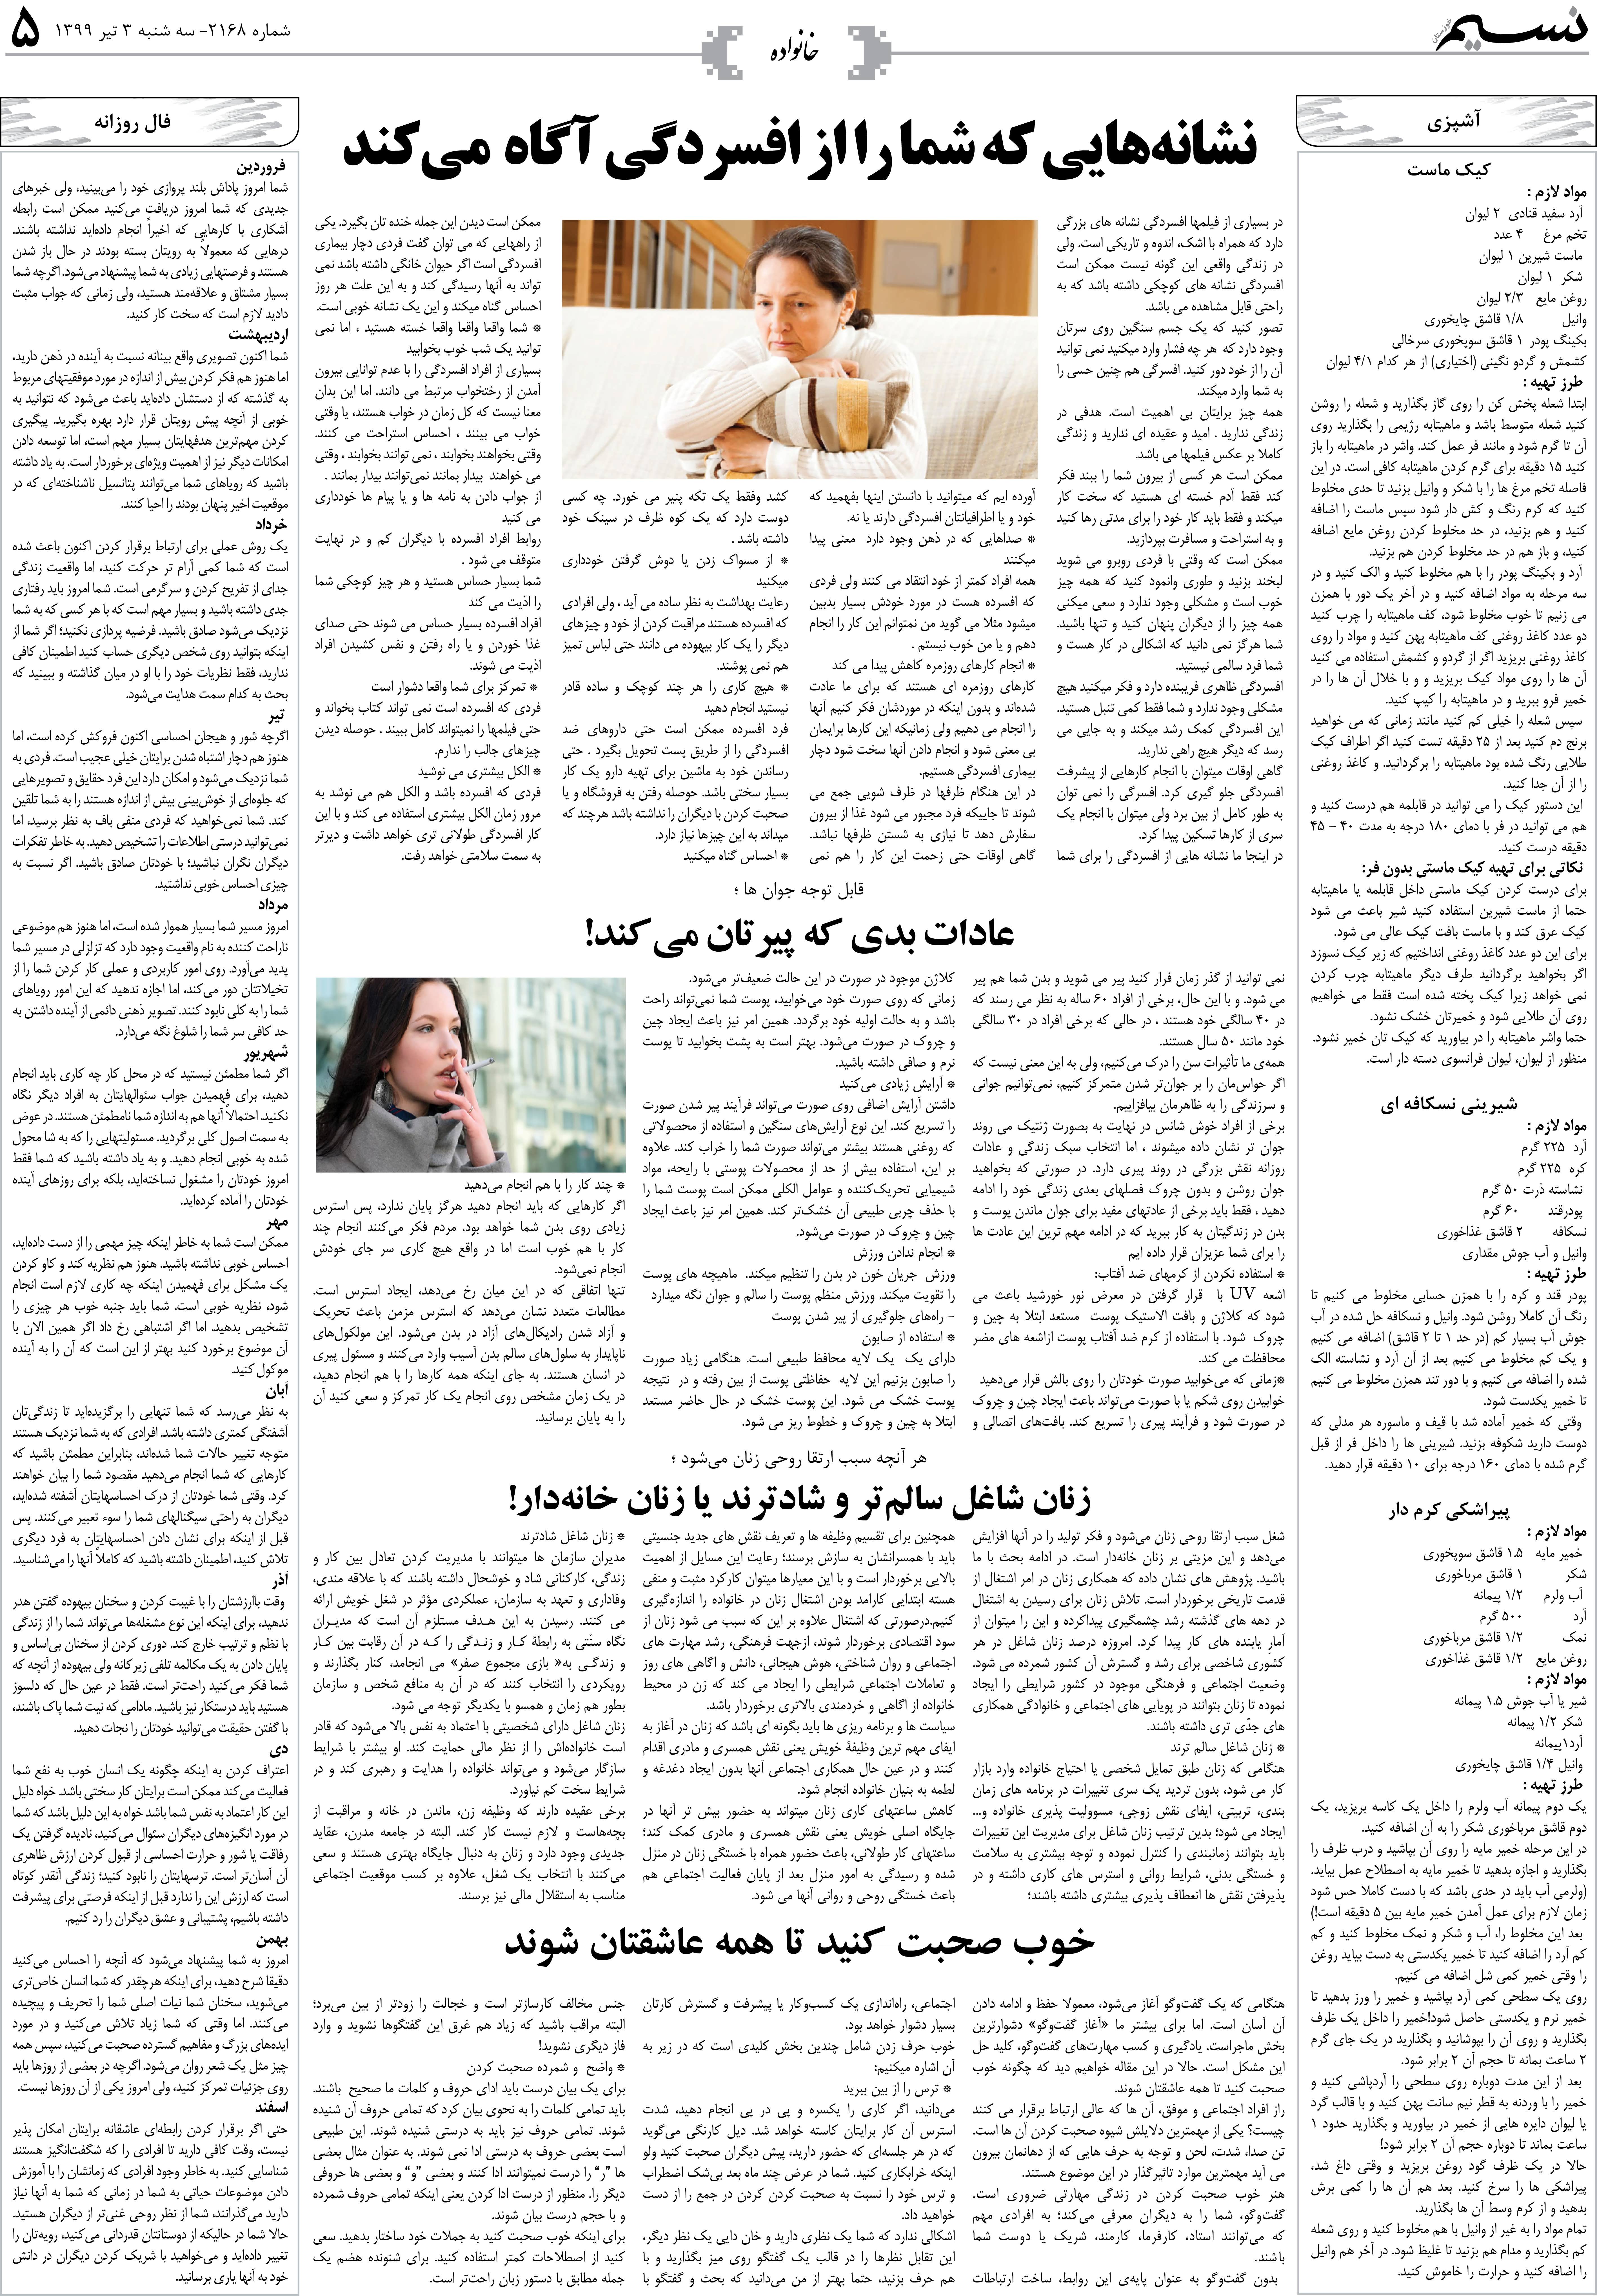 صفحه خانواده روزنامه نسیم شماره 2168